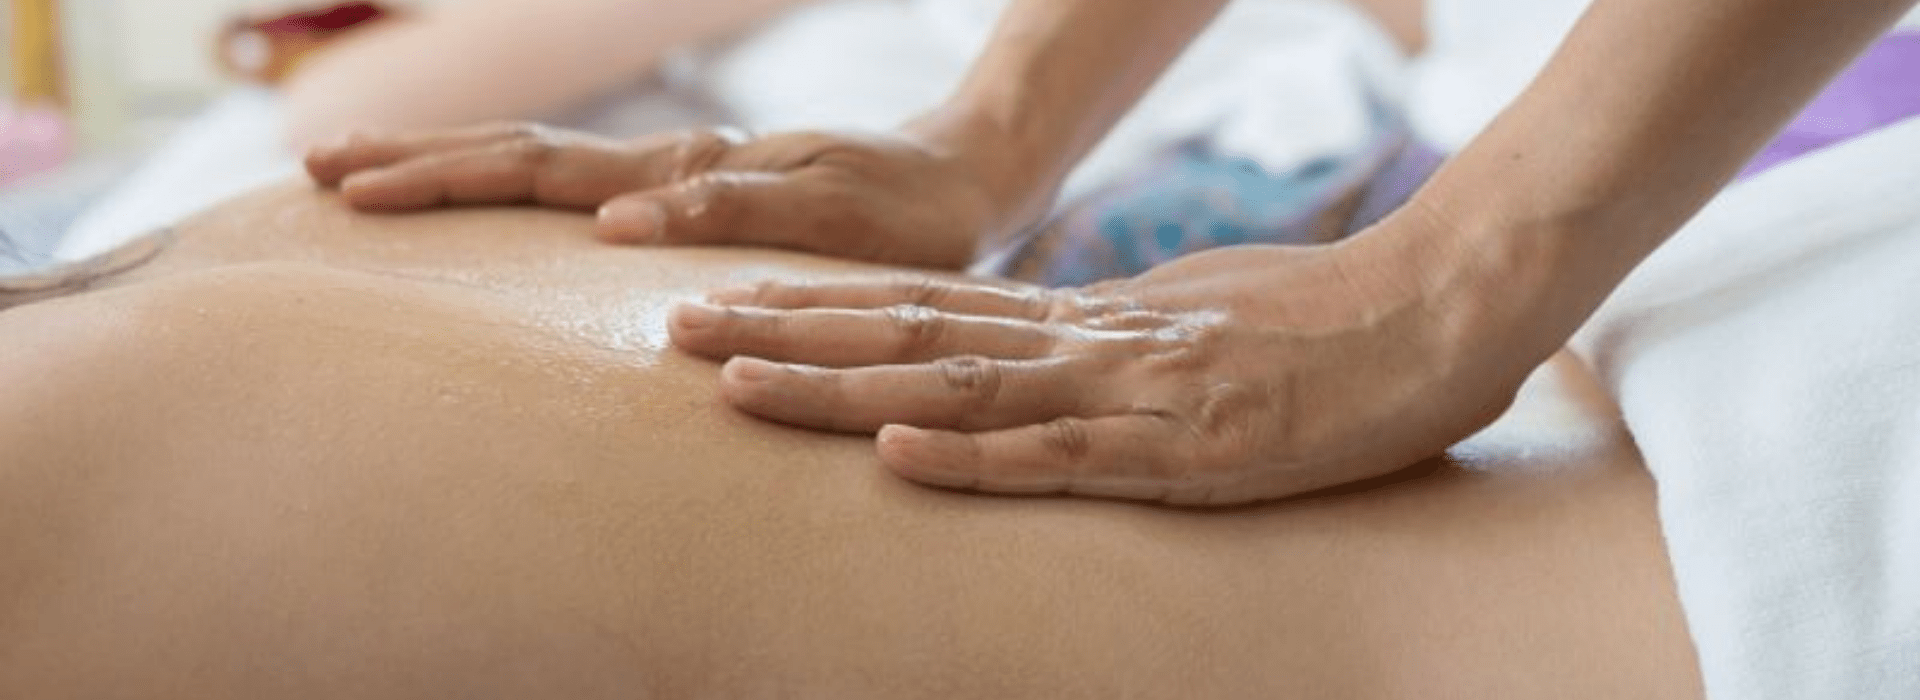 masaje-terapeutico-aceite-vital-natur